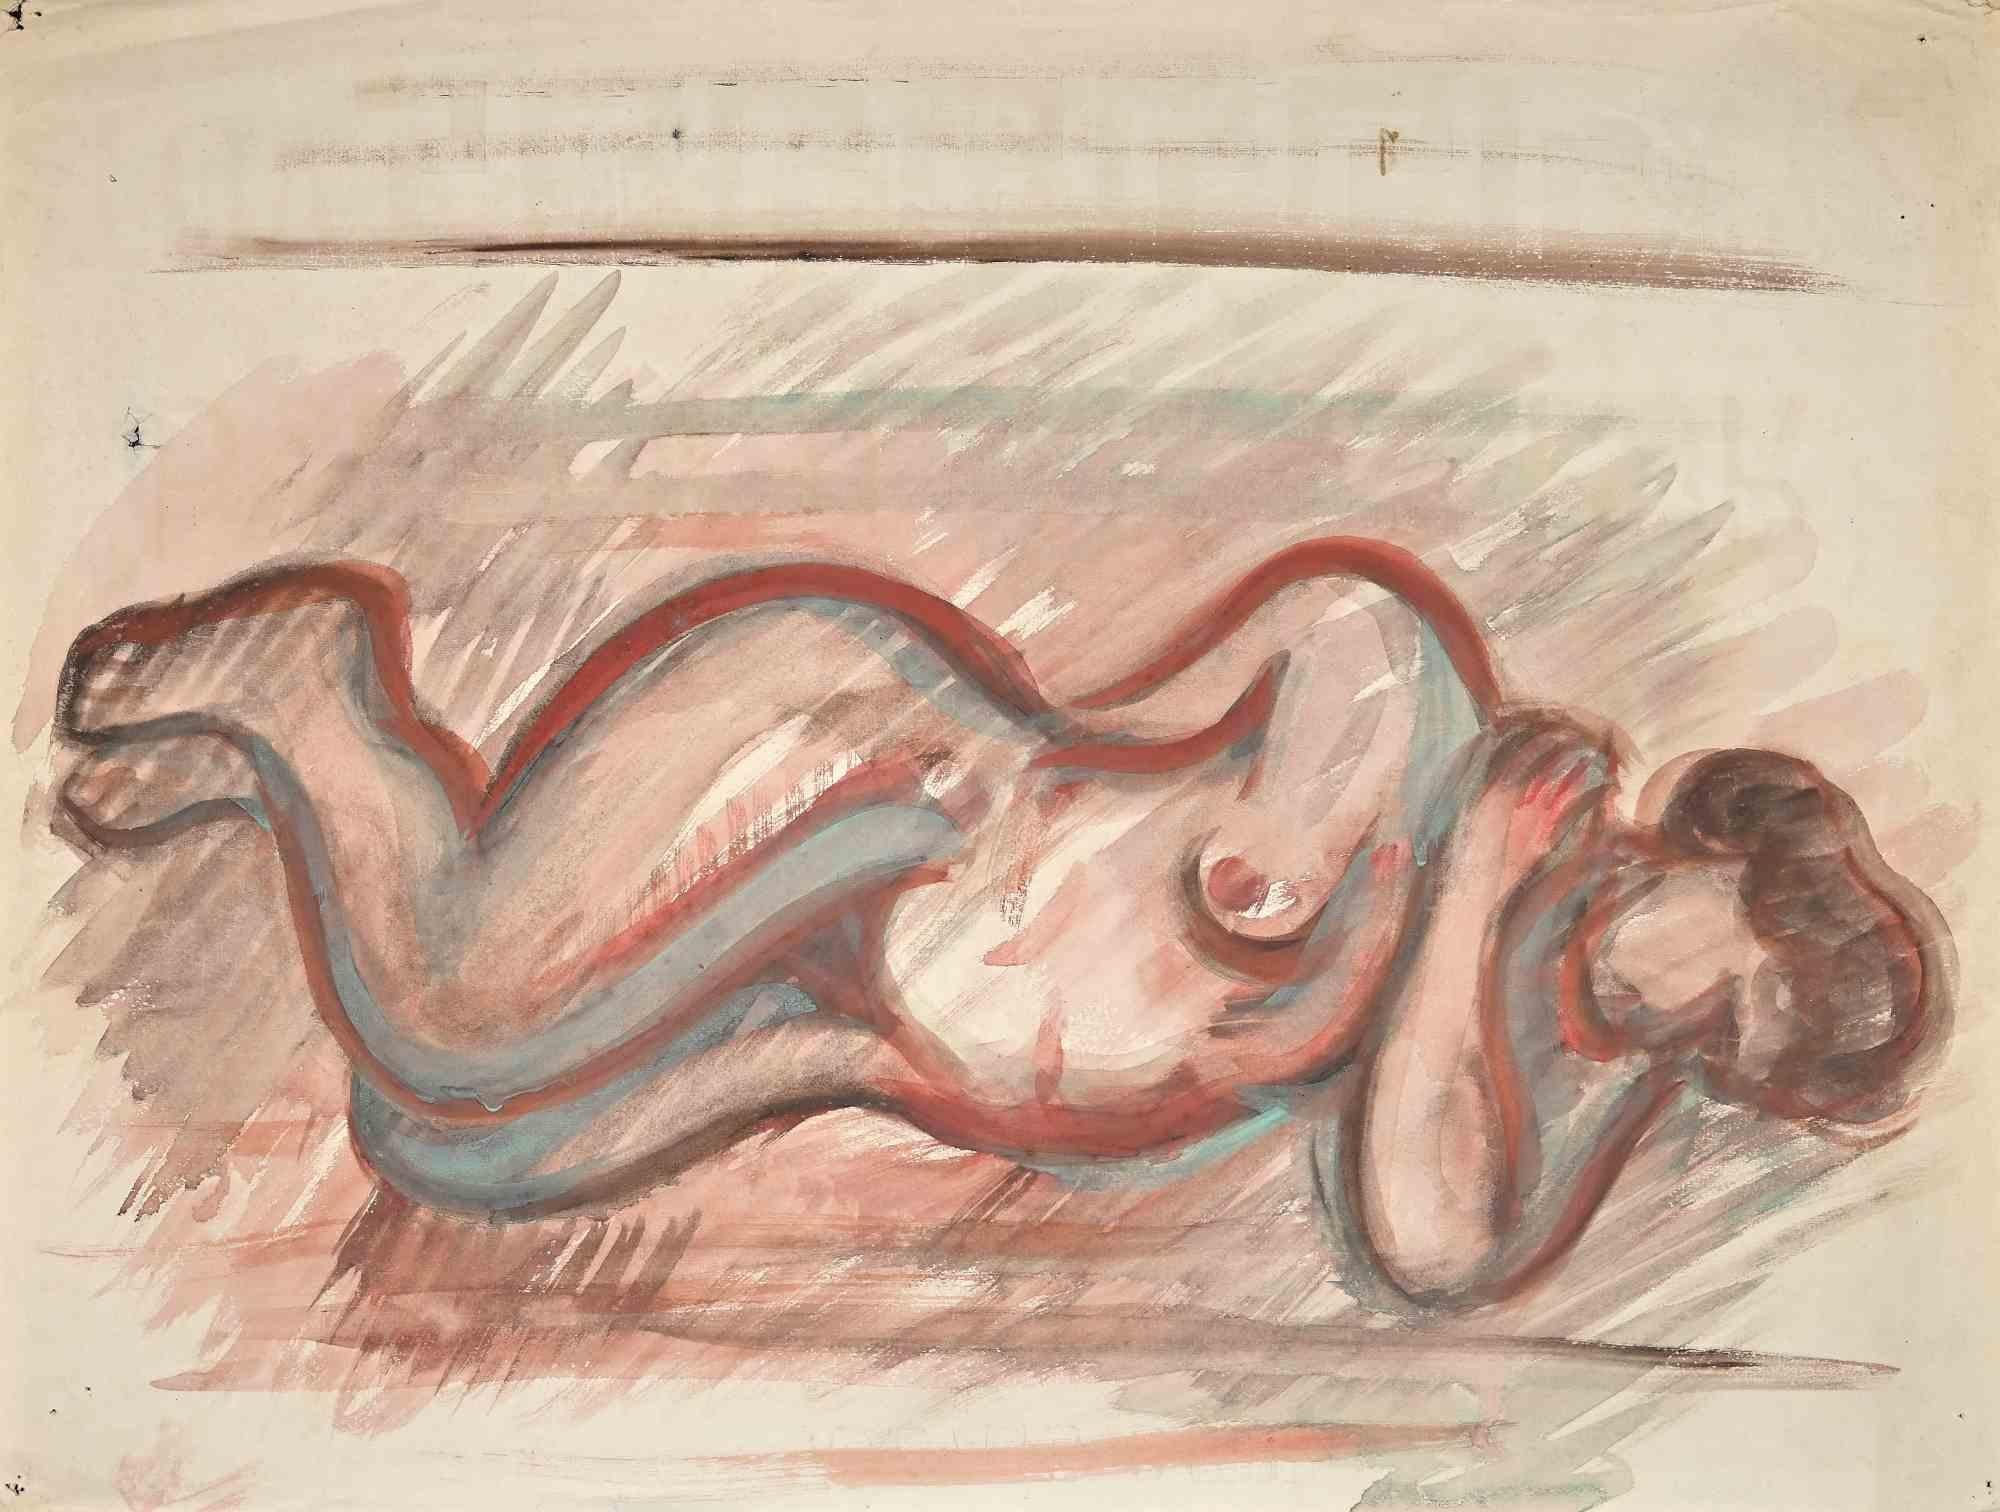 Reclined Nude ist eine Aquarellzeichnung, die Mitte des 20. Jahrhunderts von Jean Delpech (1916-1988) geschaffen wurde. 

Guter Zustand mit kleinen Faltungen und Schnitten an den Rändern.

Das Kunstwerk ist in harmonischen und kongruenten Farben